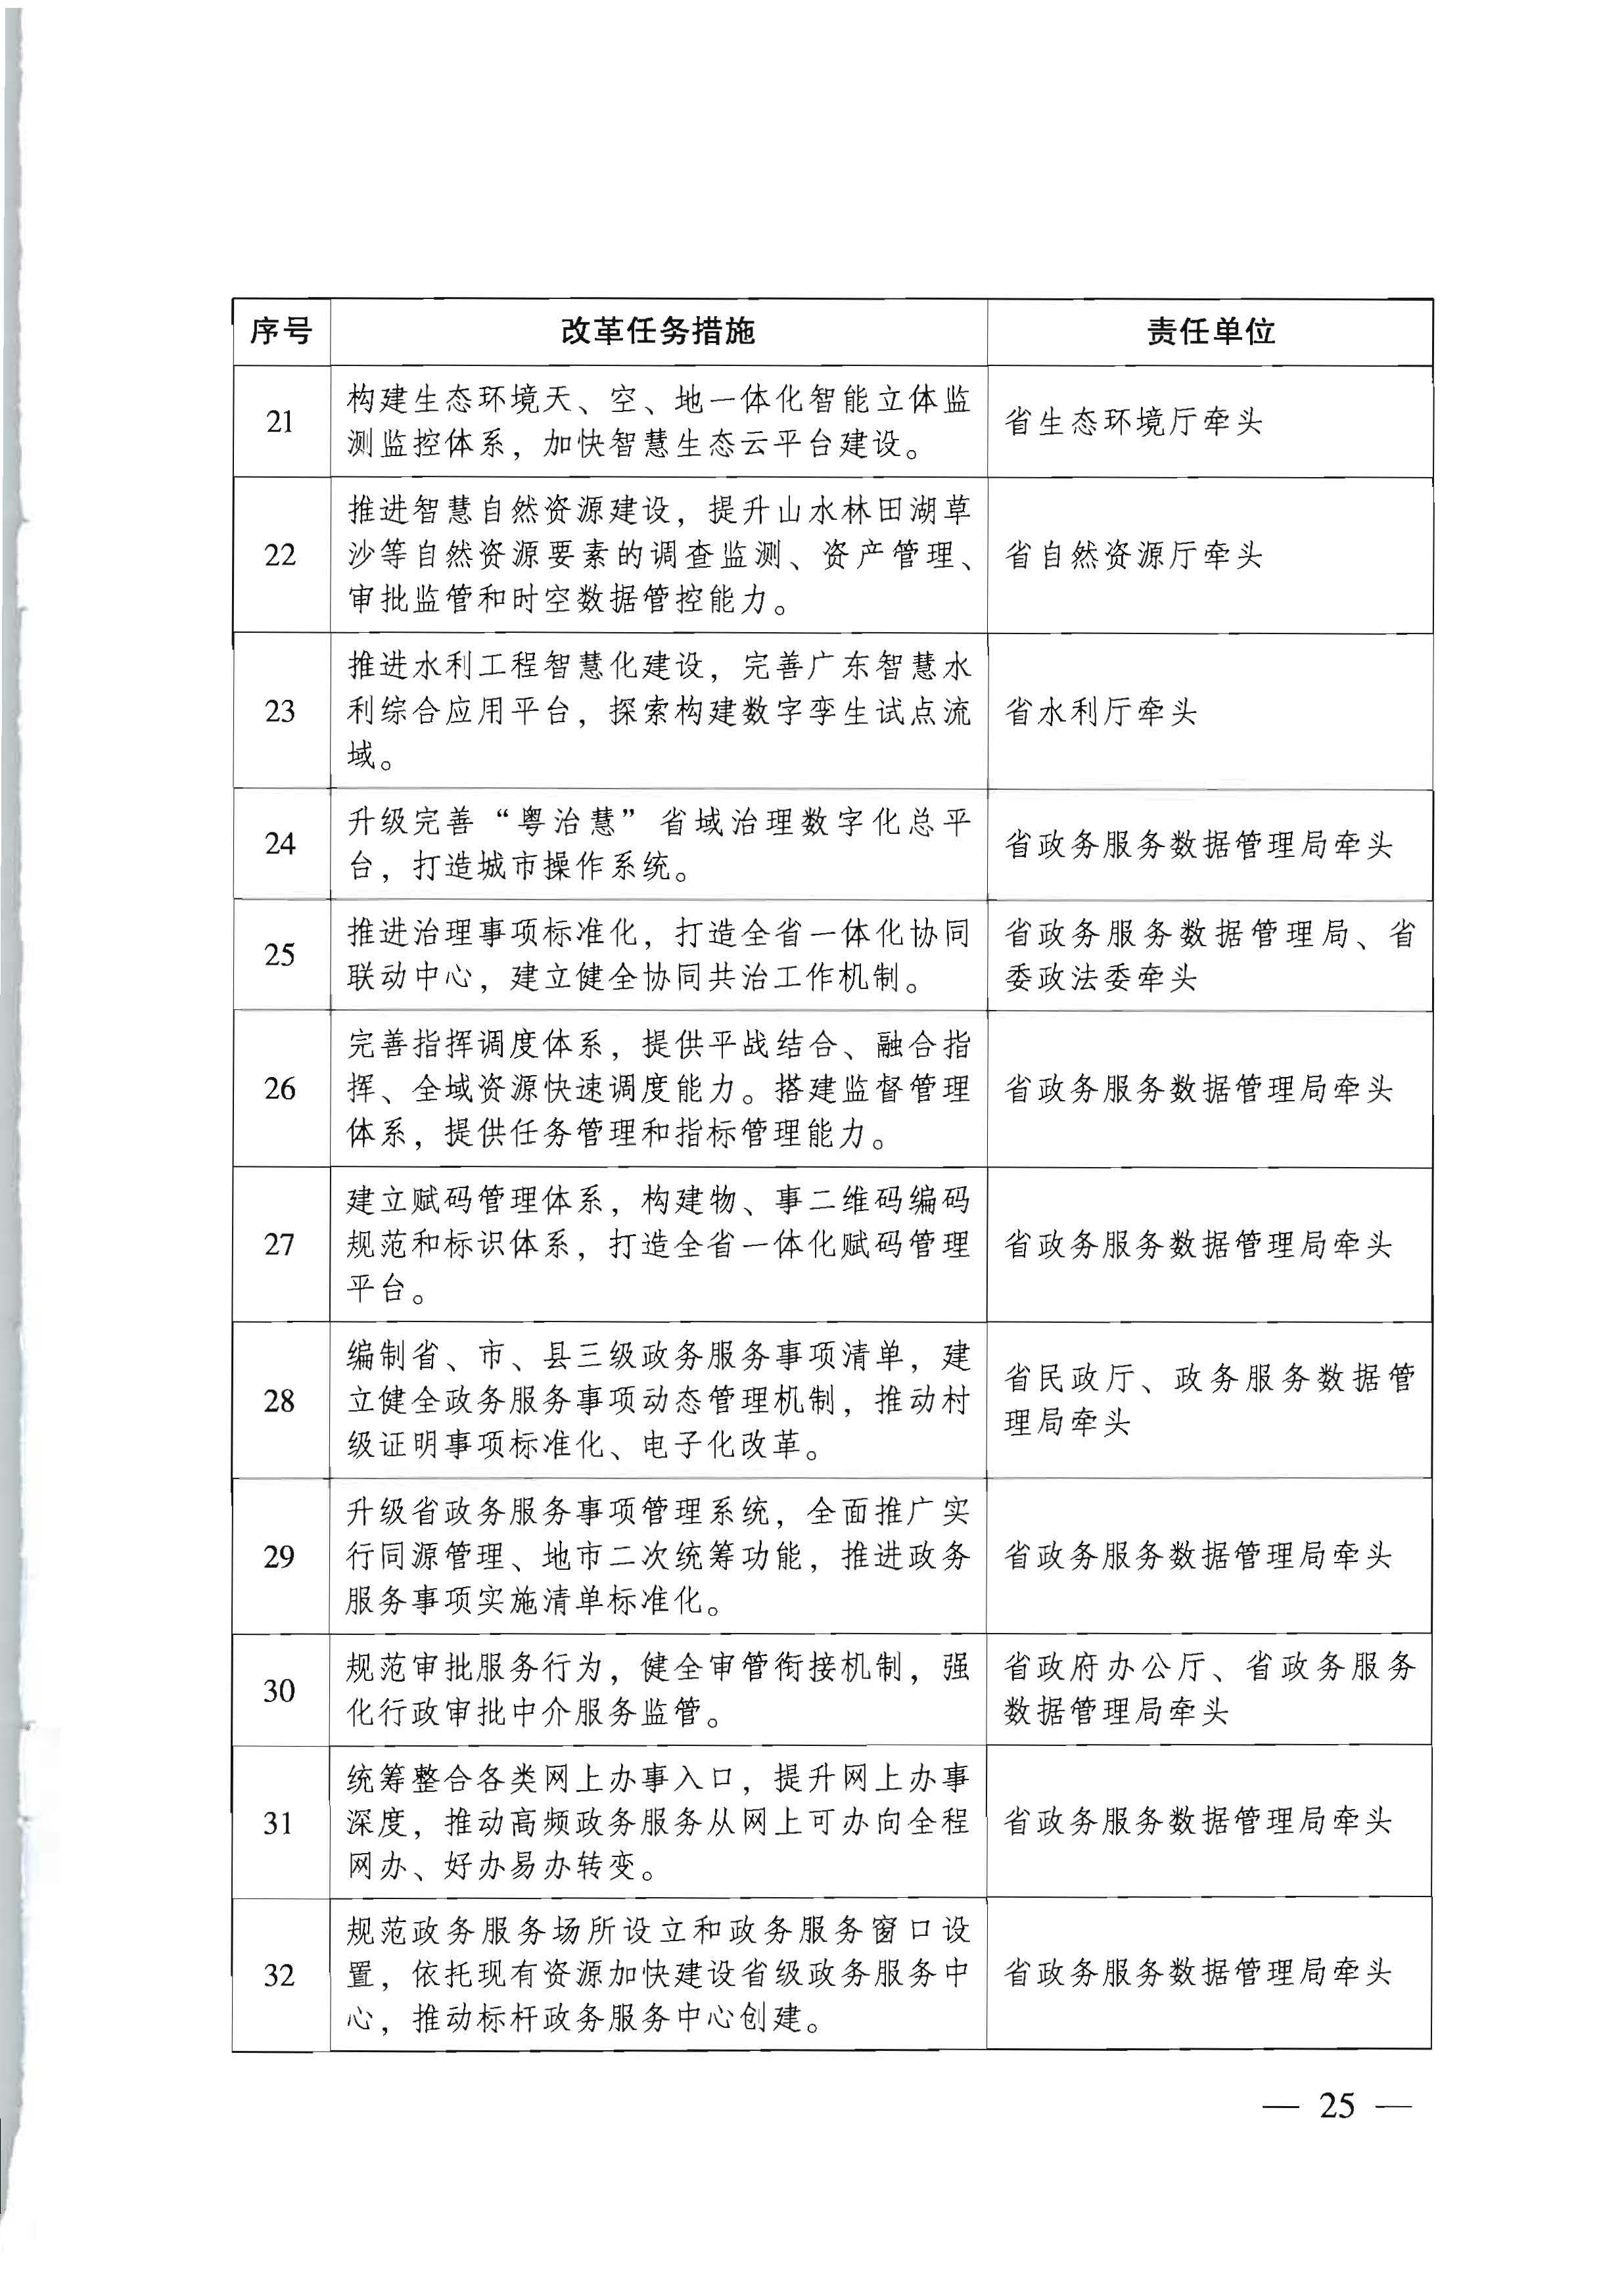 广东省人民政府关于进一步深化数字政府改革建设的实施意见_页面_25.jpg